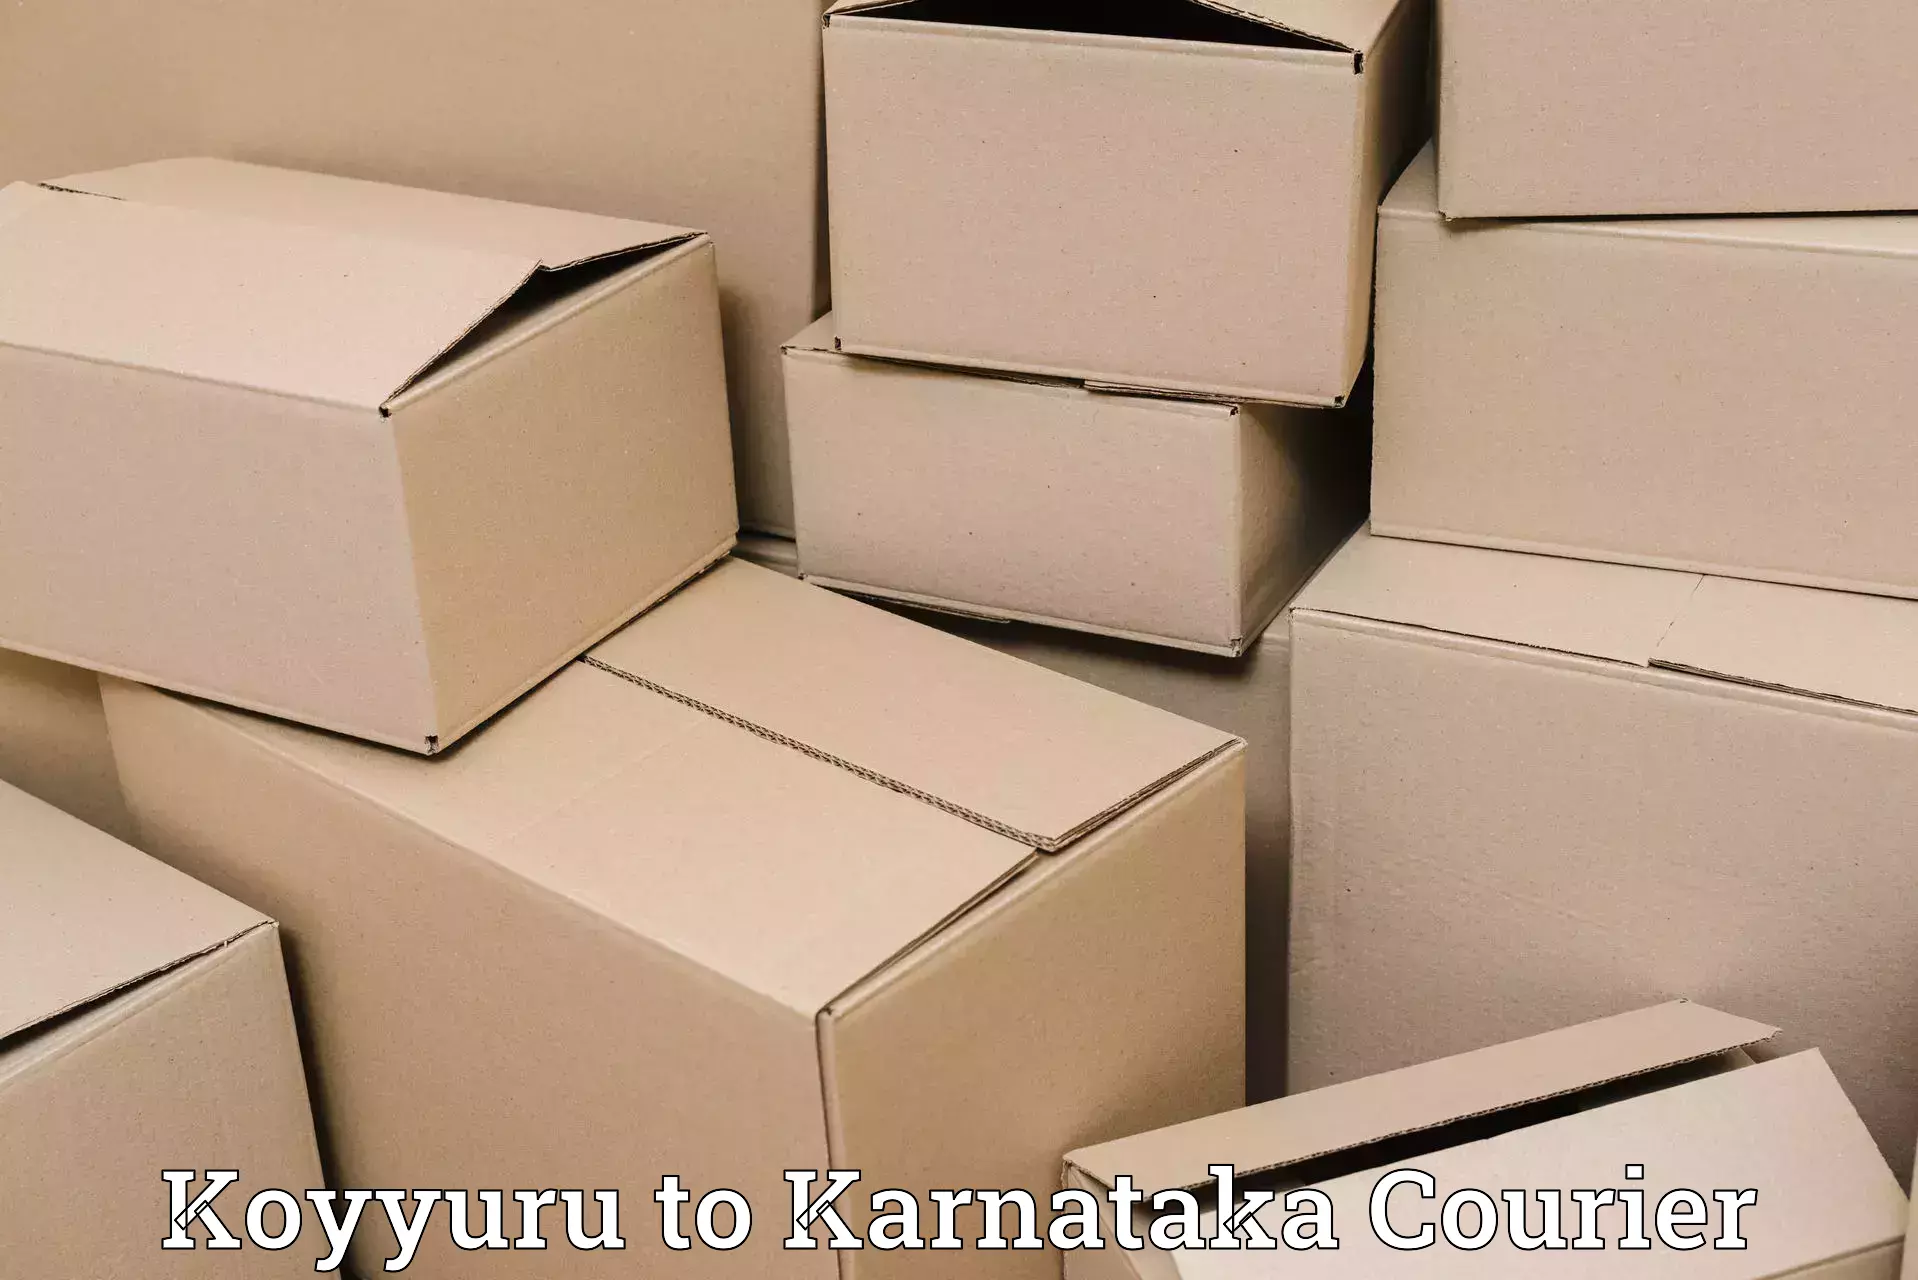 Bulk shipment Koyyuru to Malavalli